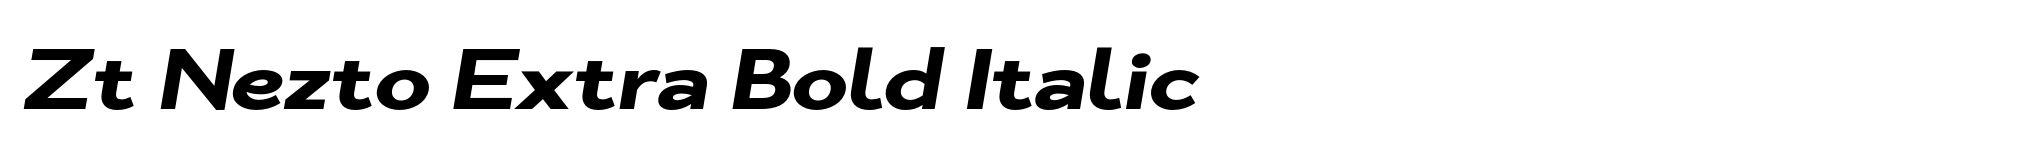 Zt Nezto Extra Bold Italic image